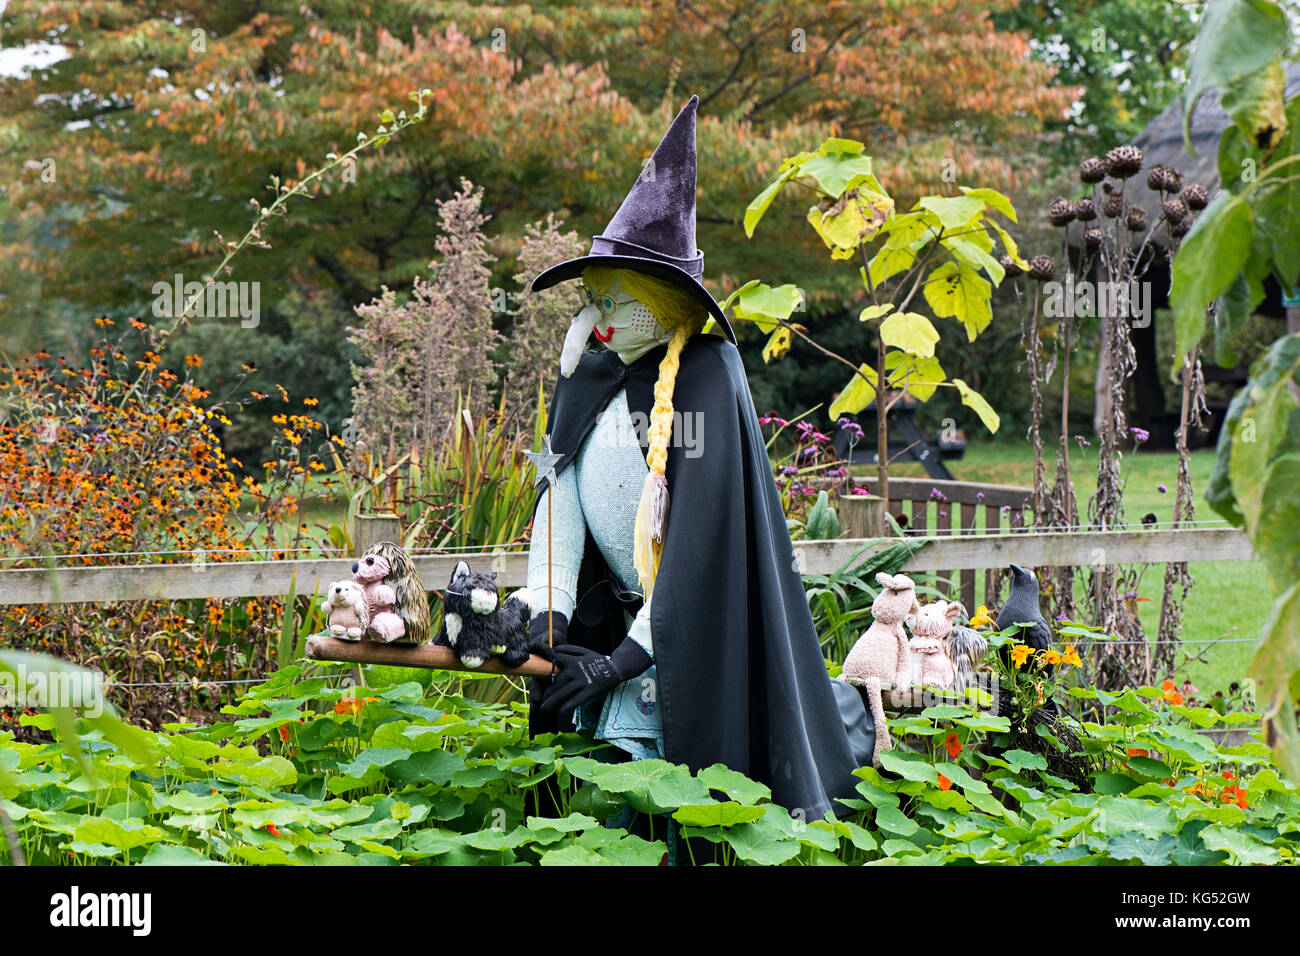 Une sorcière sur un balai avec un chat noir, jardin afficher pour l'halloween. Banque D'Images